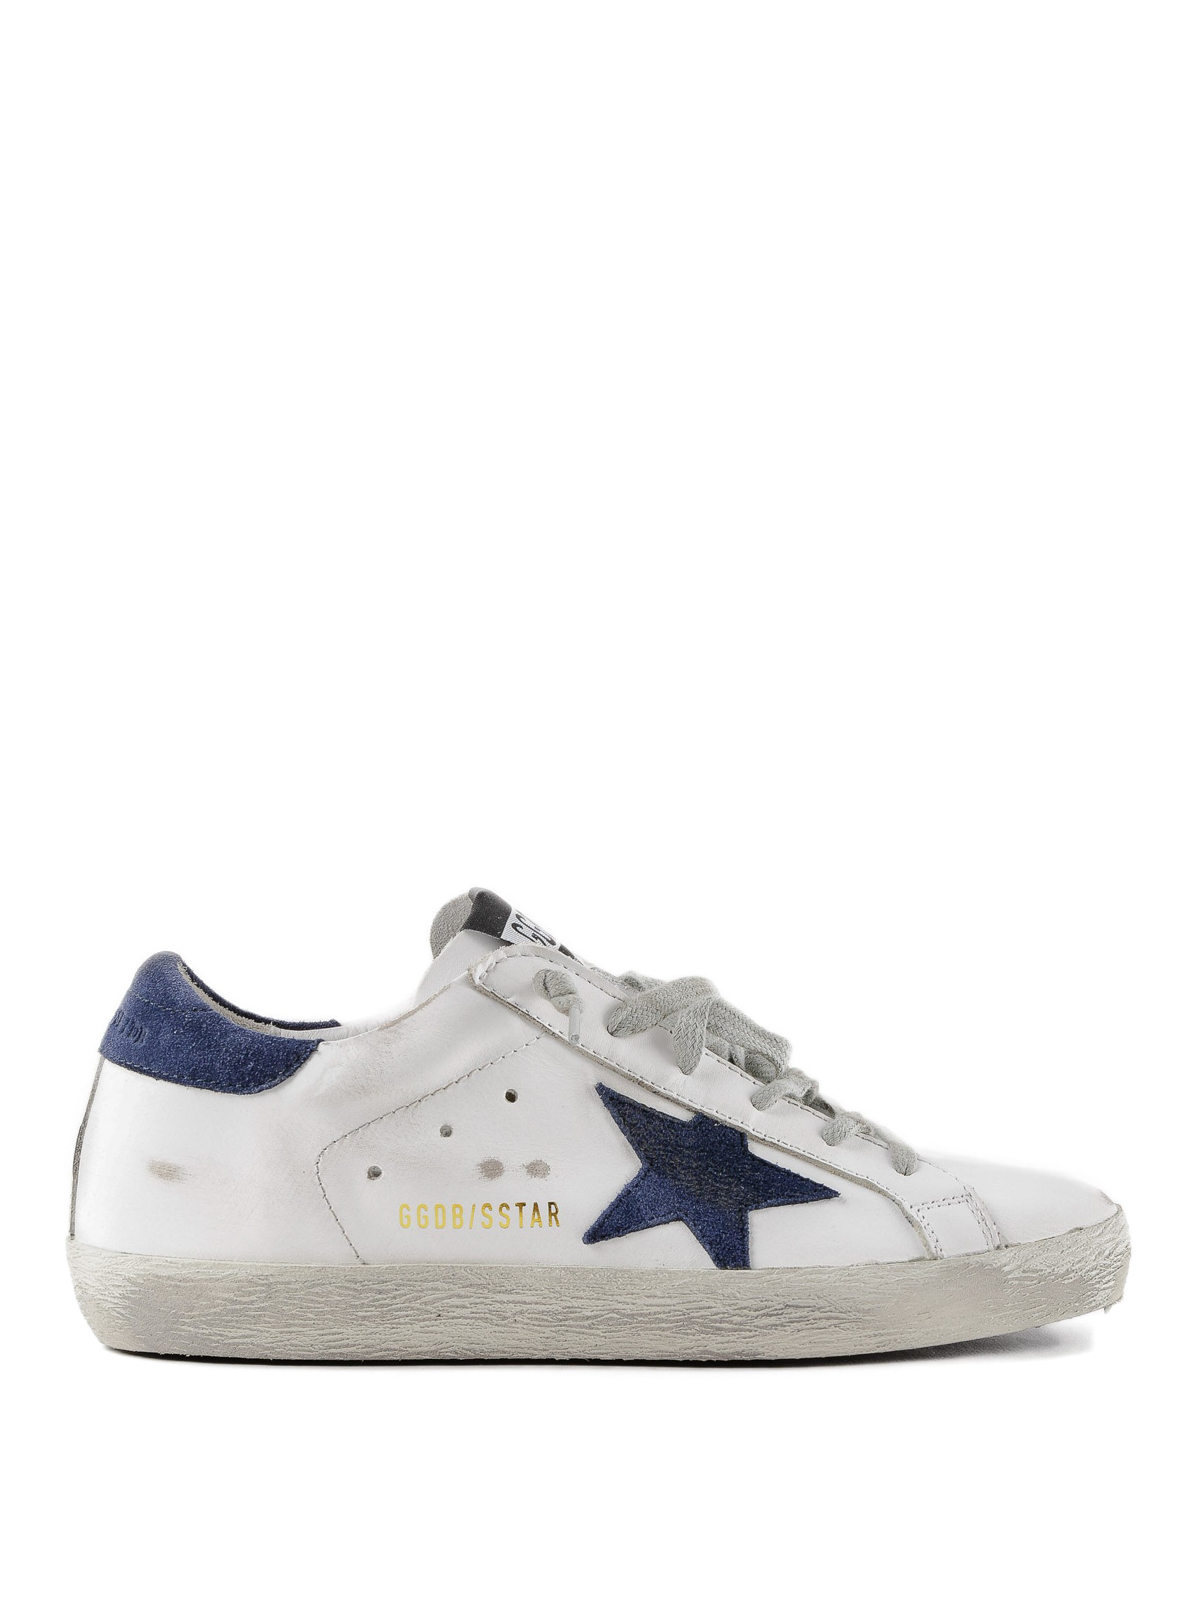 golden goose sneakers blue star